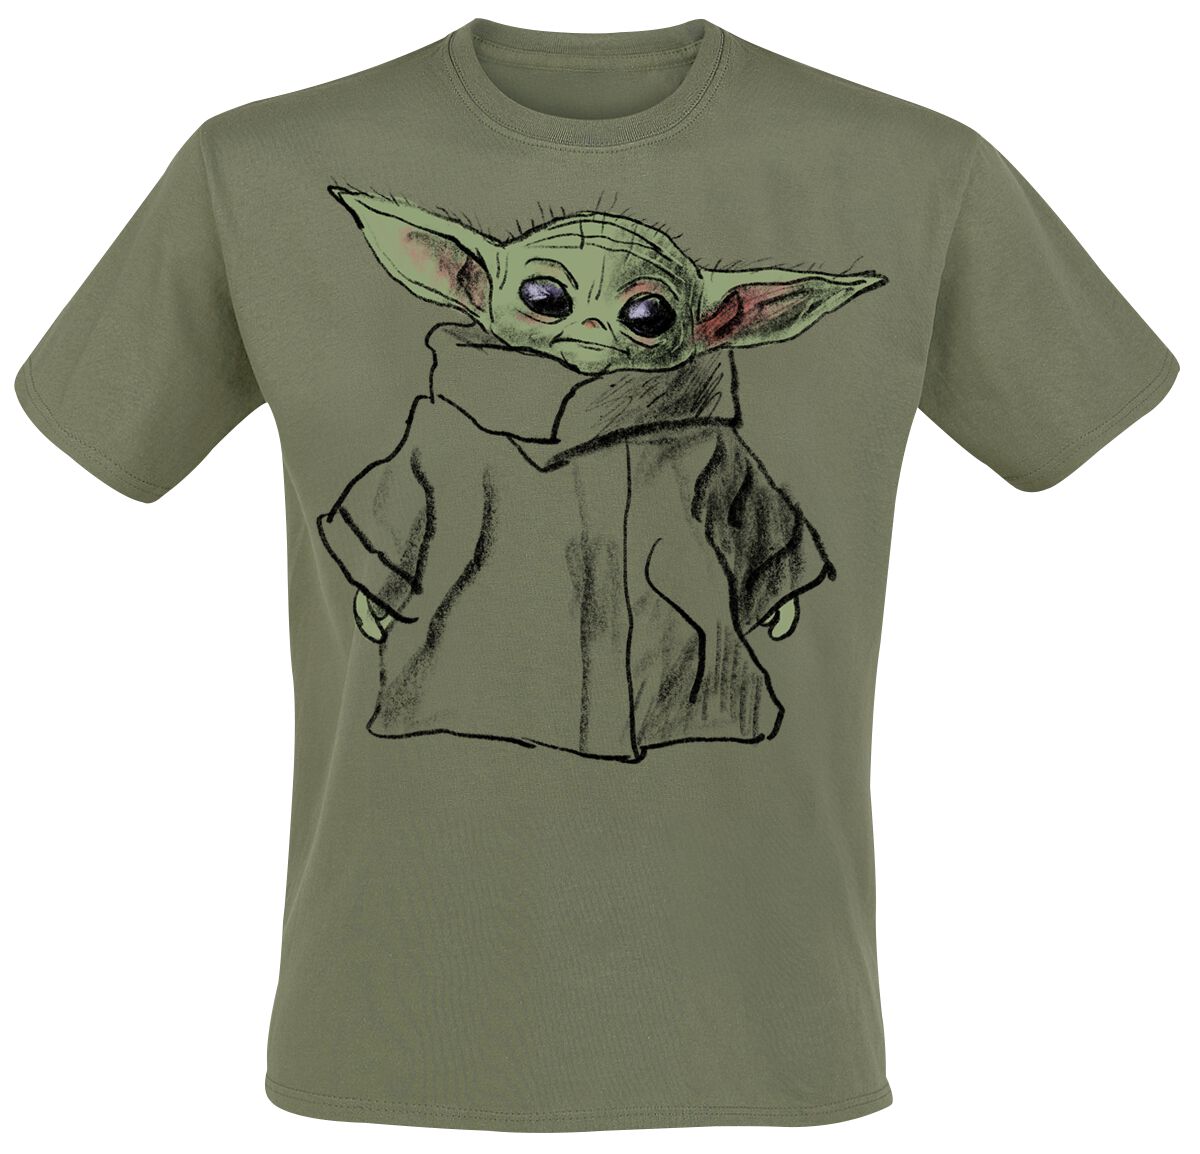 Star Wars T-Shirt - The Mandalorian - Grogu - Sketch - S bis XXL - für Männer - Größe S - grün  - EMP exklusives Merchandise!